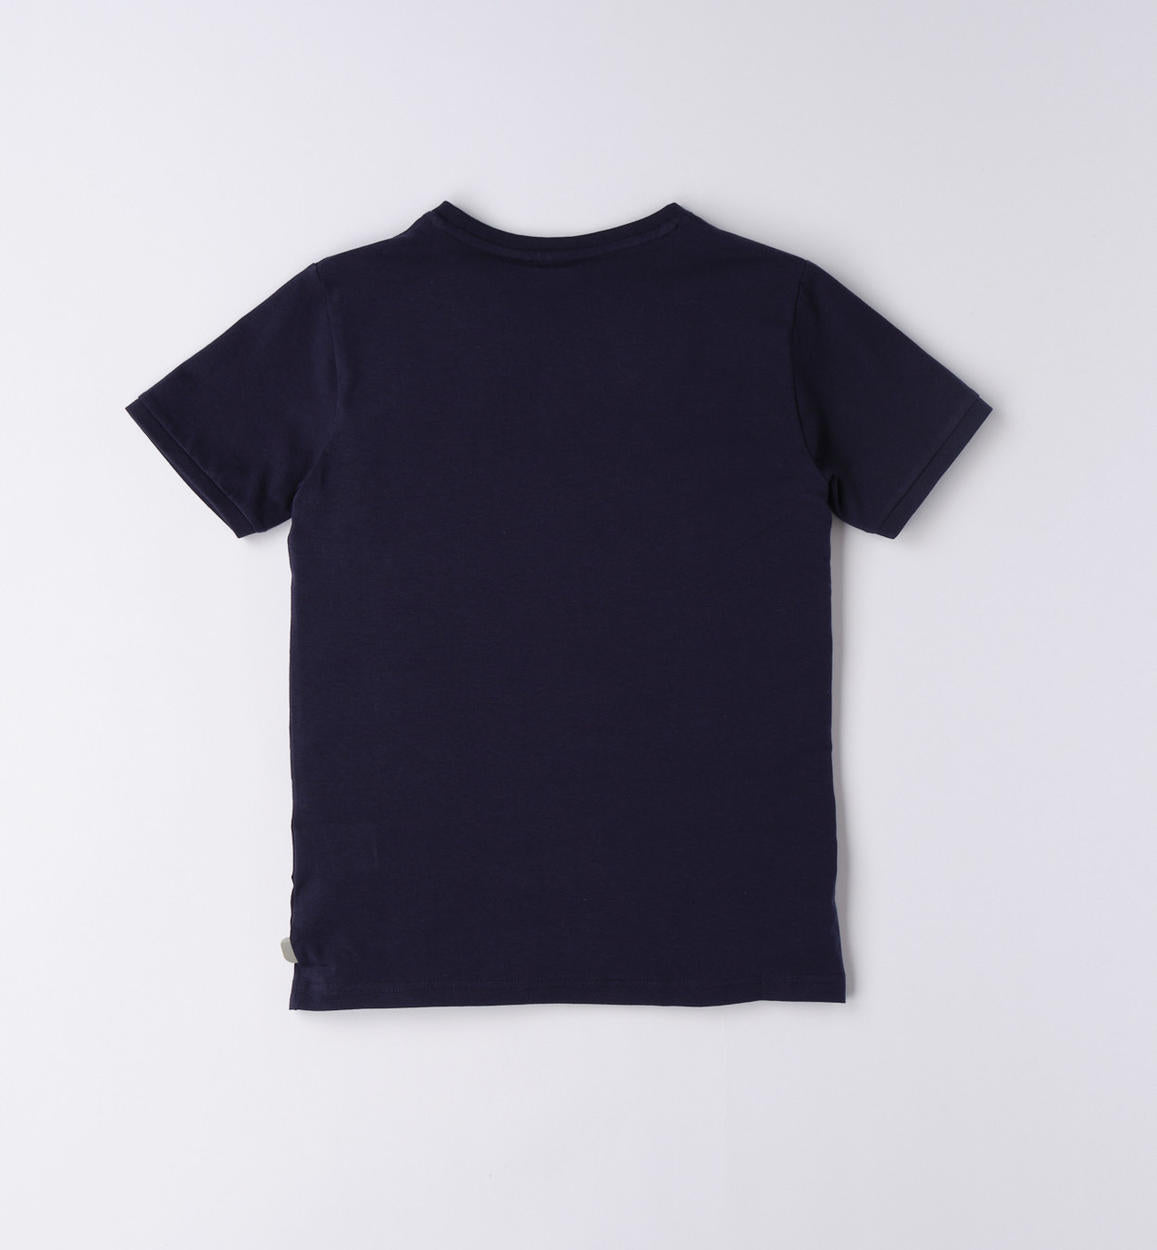 Maglietta , T-shirt ragazzo con taschino da 8 a 16 anni Sarabanda 06636 - BabyBimbo 0-16, abbigliamento bambini